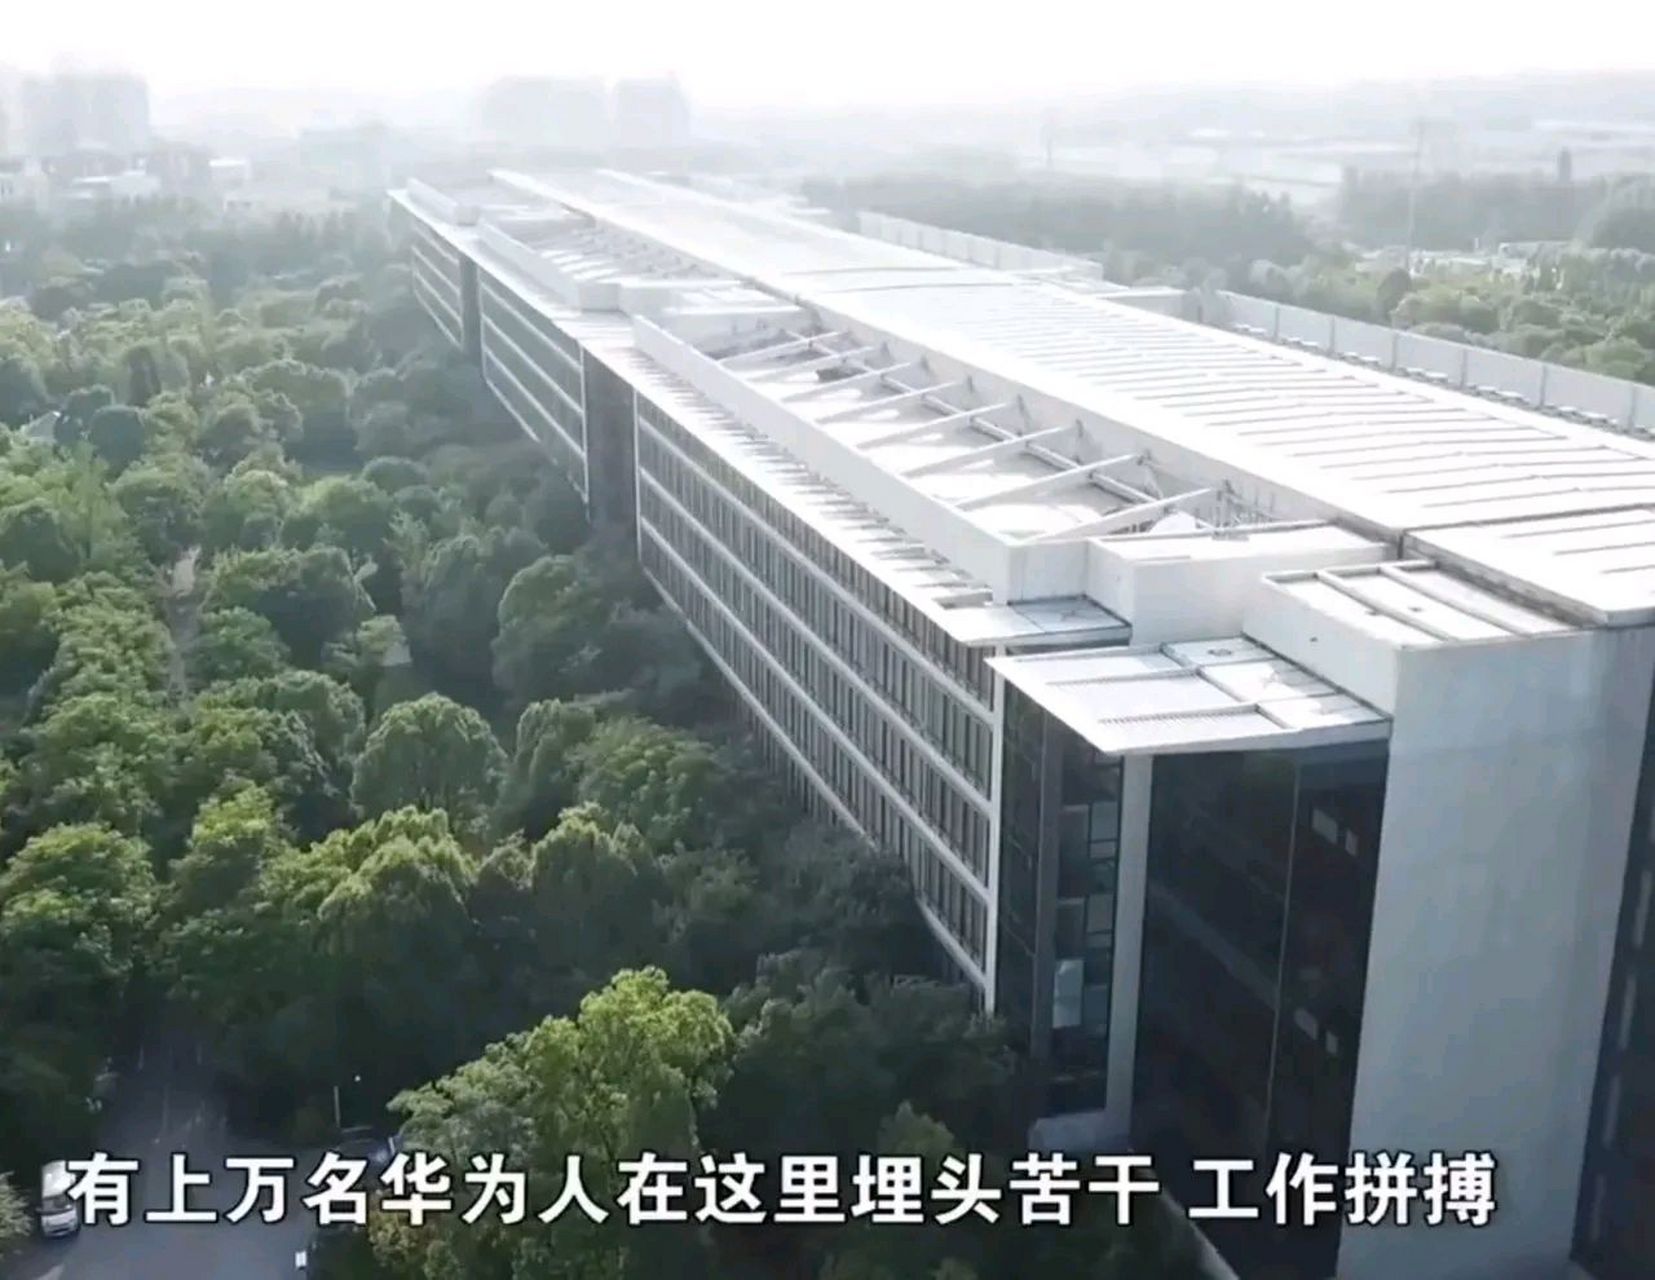 这就是华为九大研究所之一的华为上海研究所!